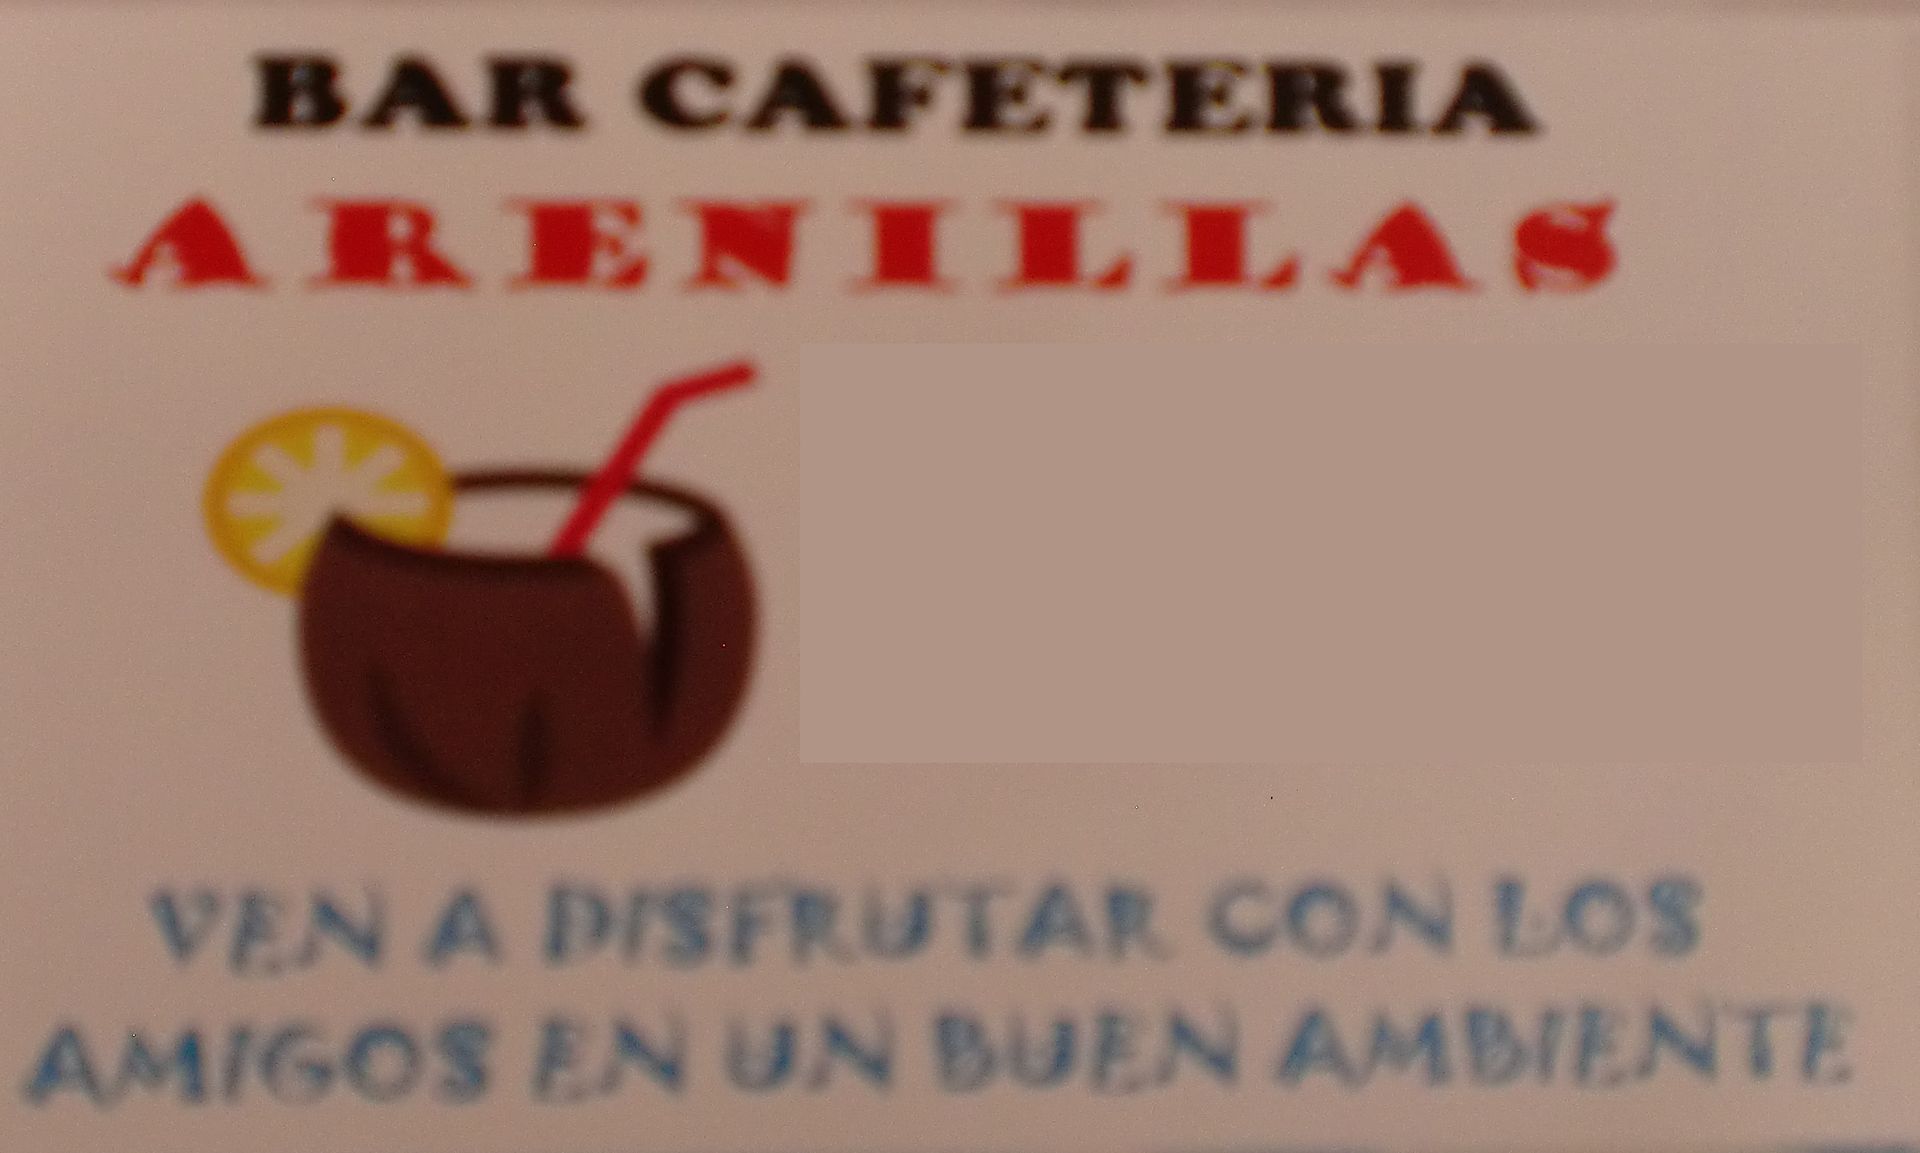 Bar Cafetería Arenillas